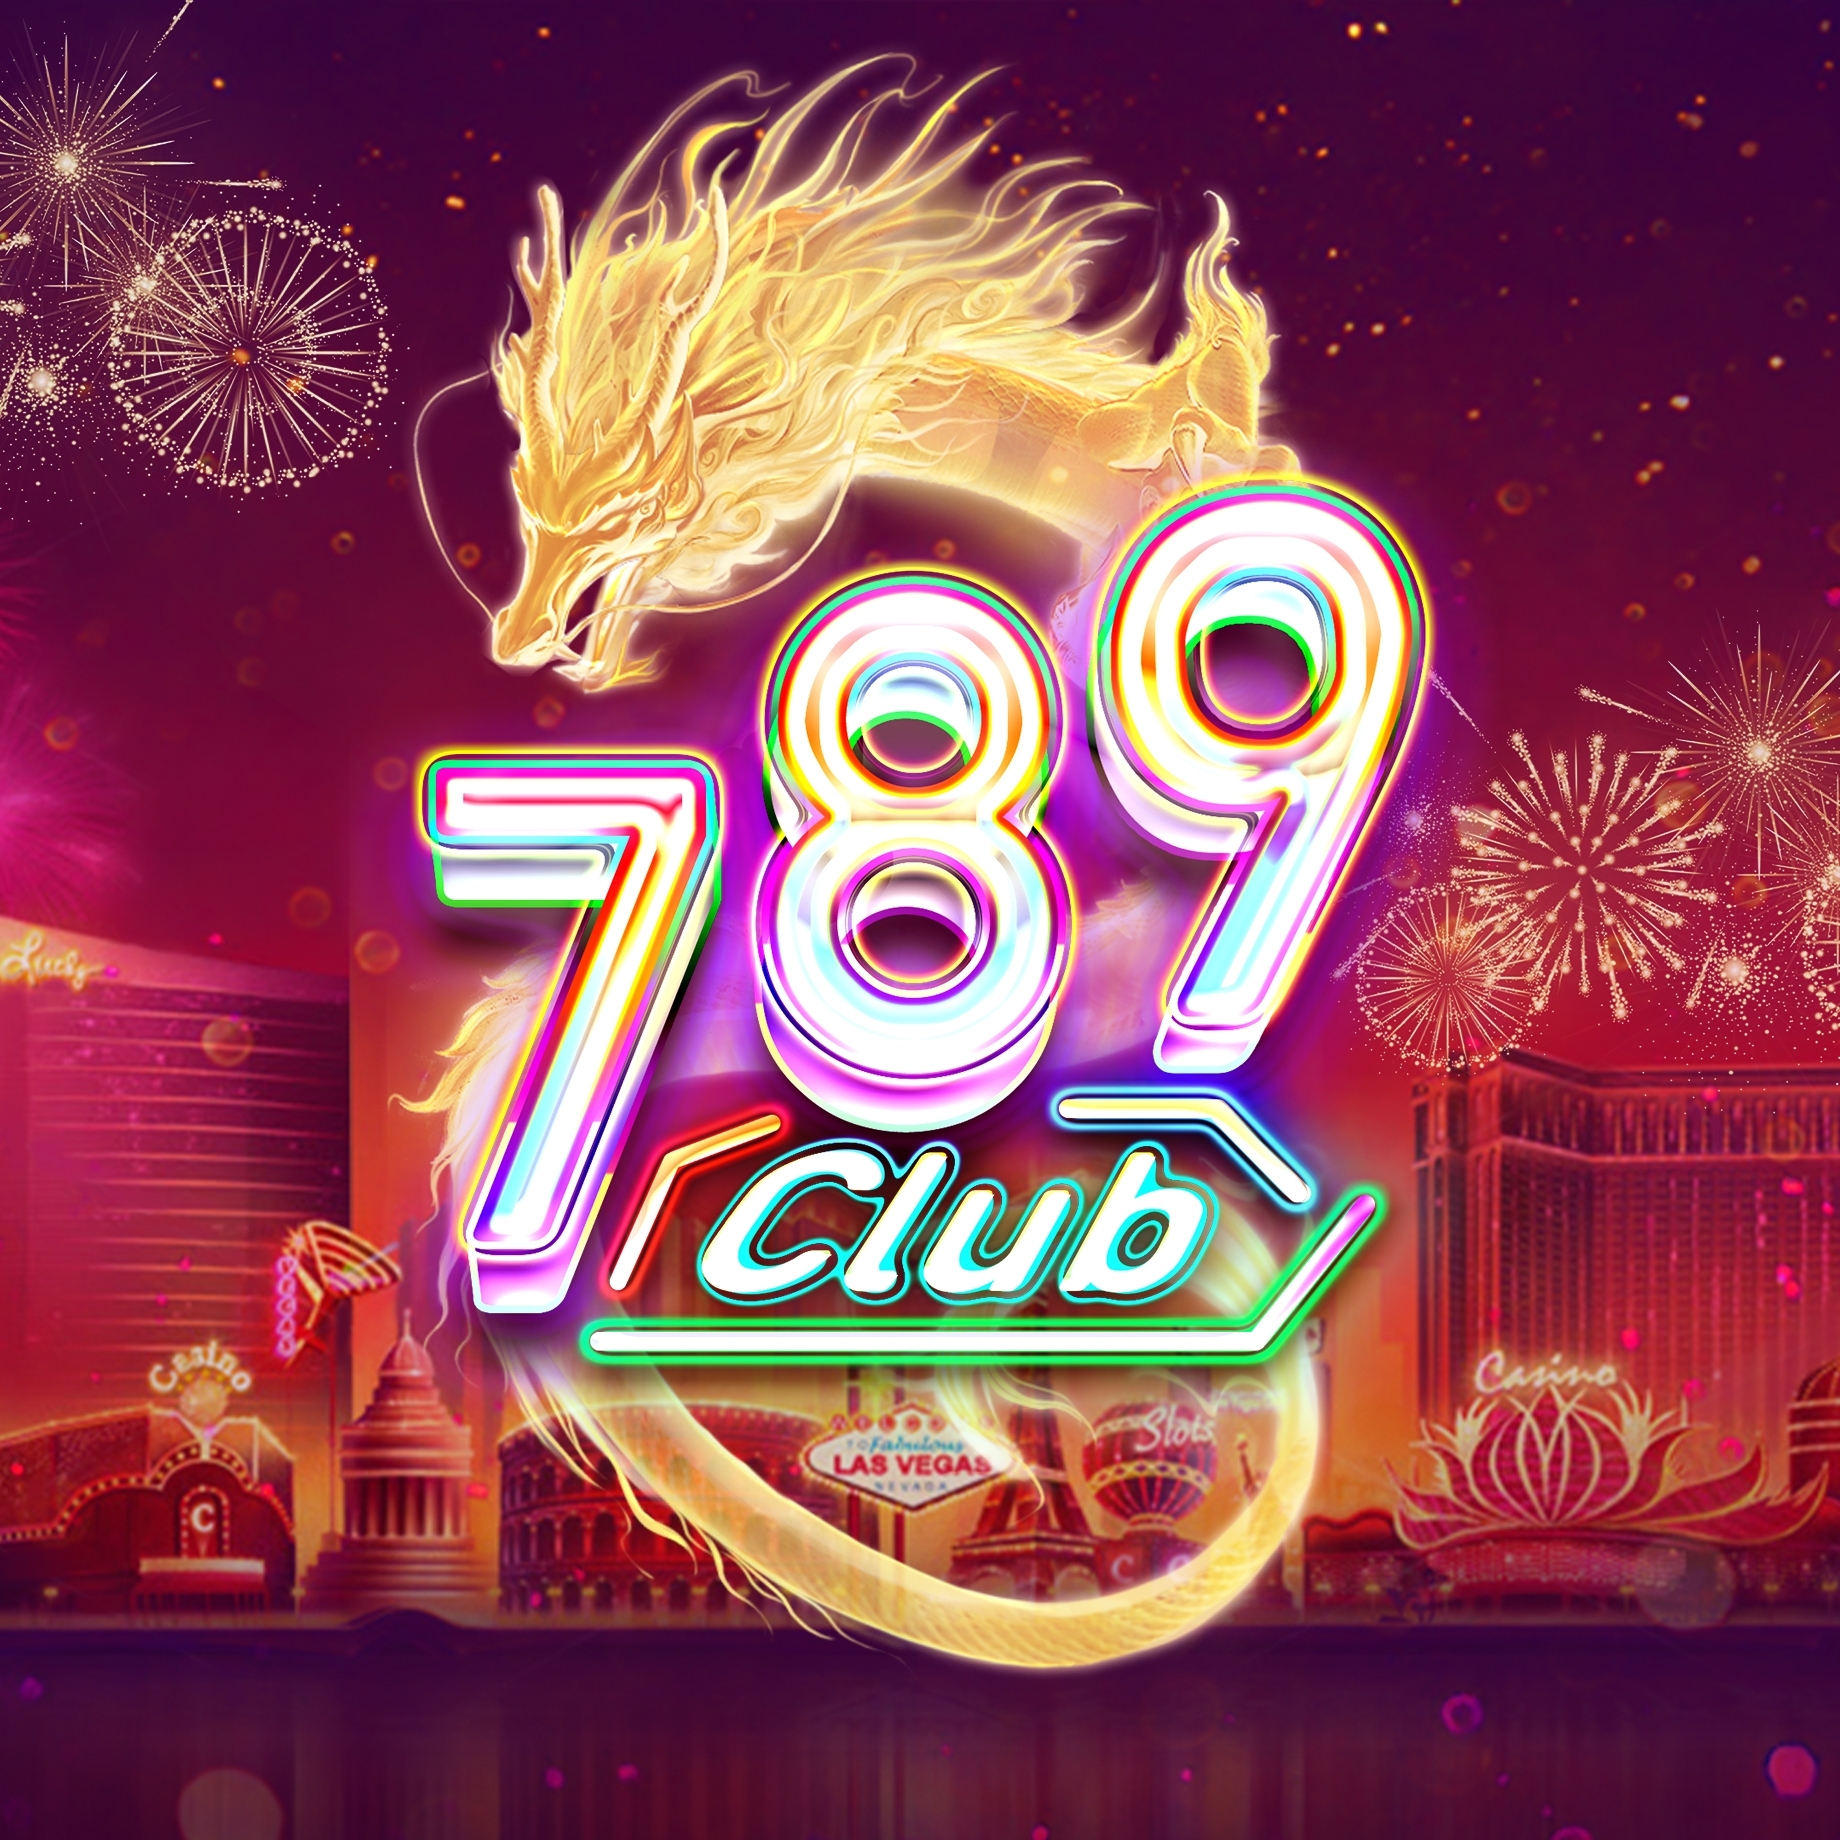 789club top's avatar'